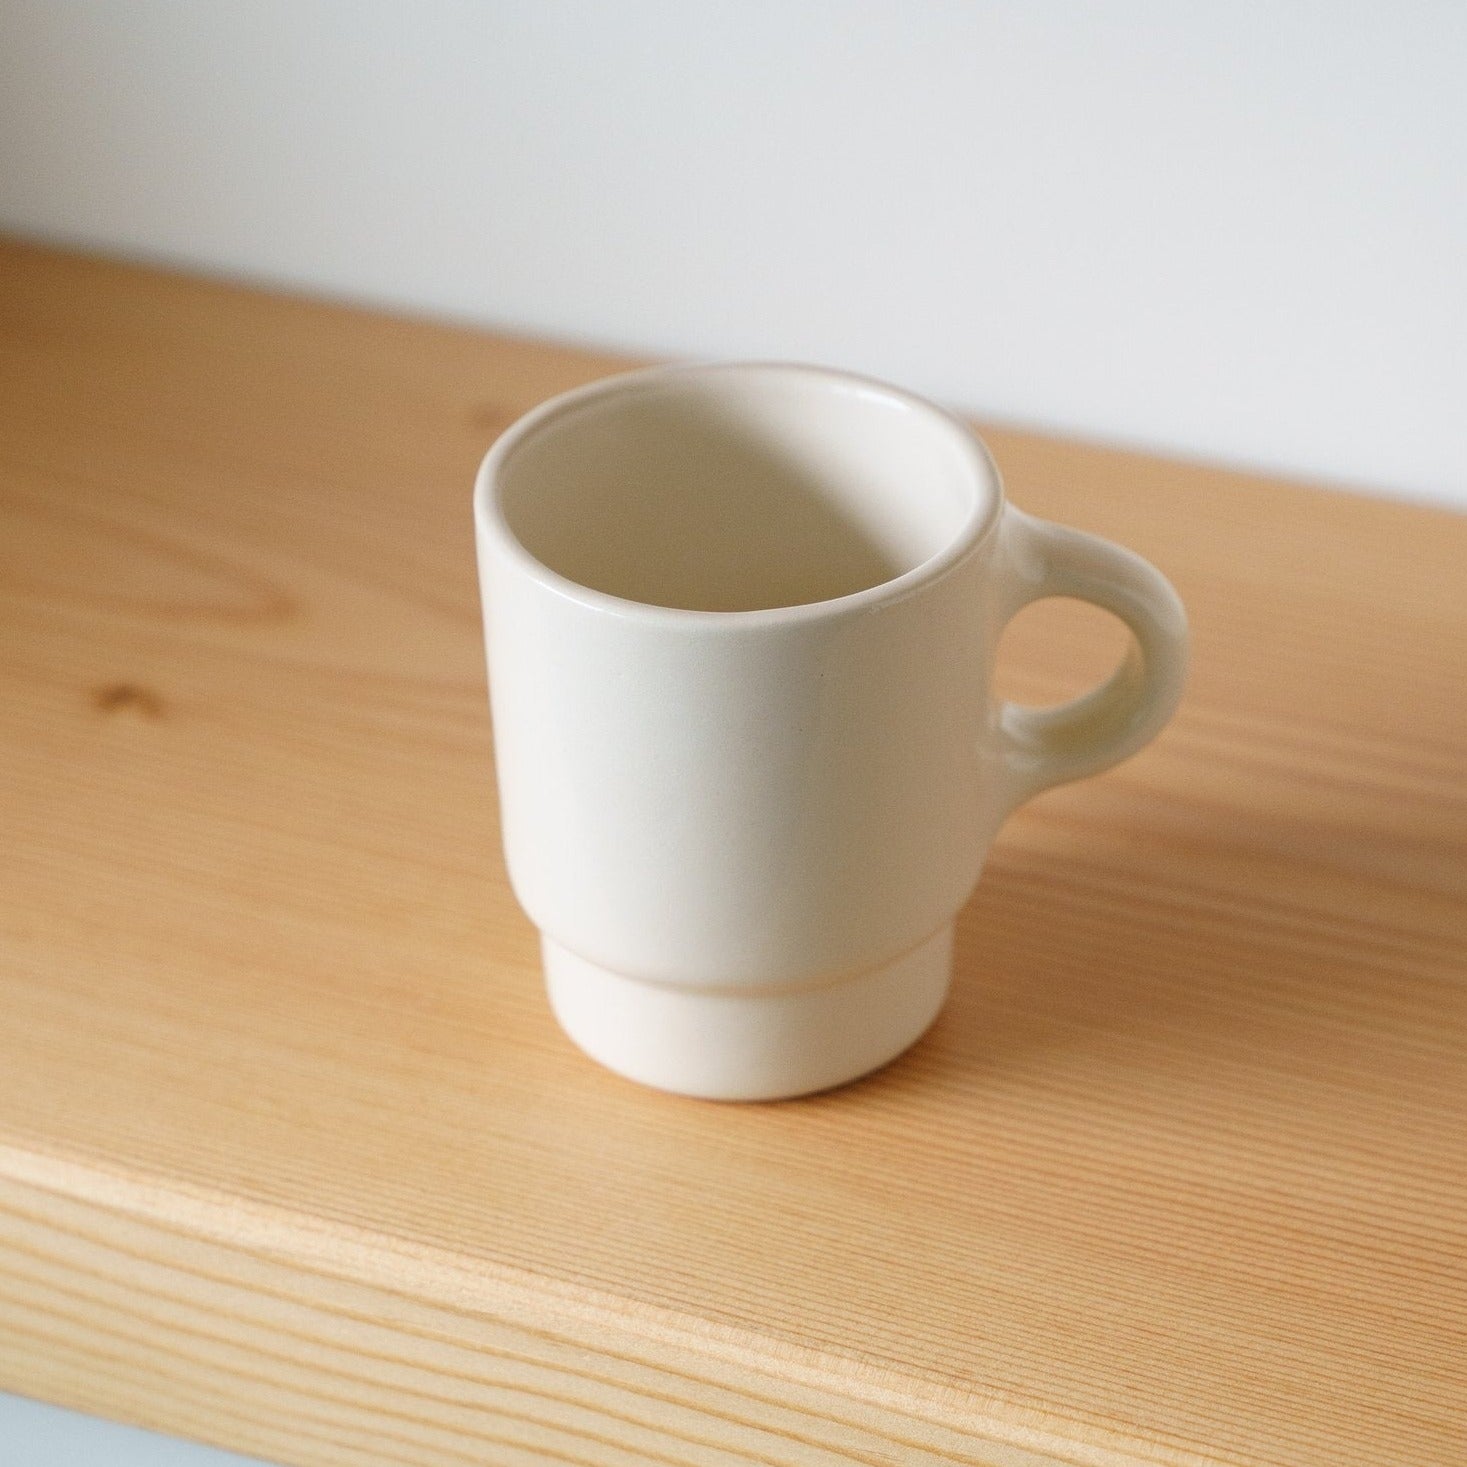 Milkware Ceramic Mug